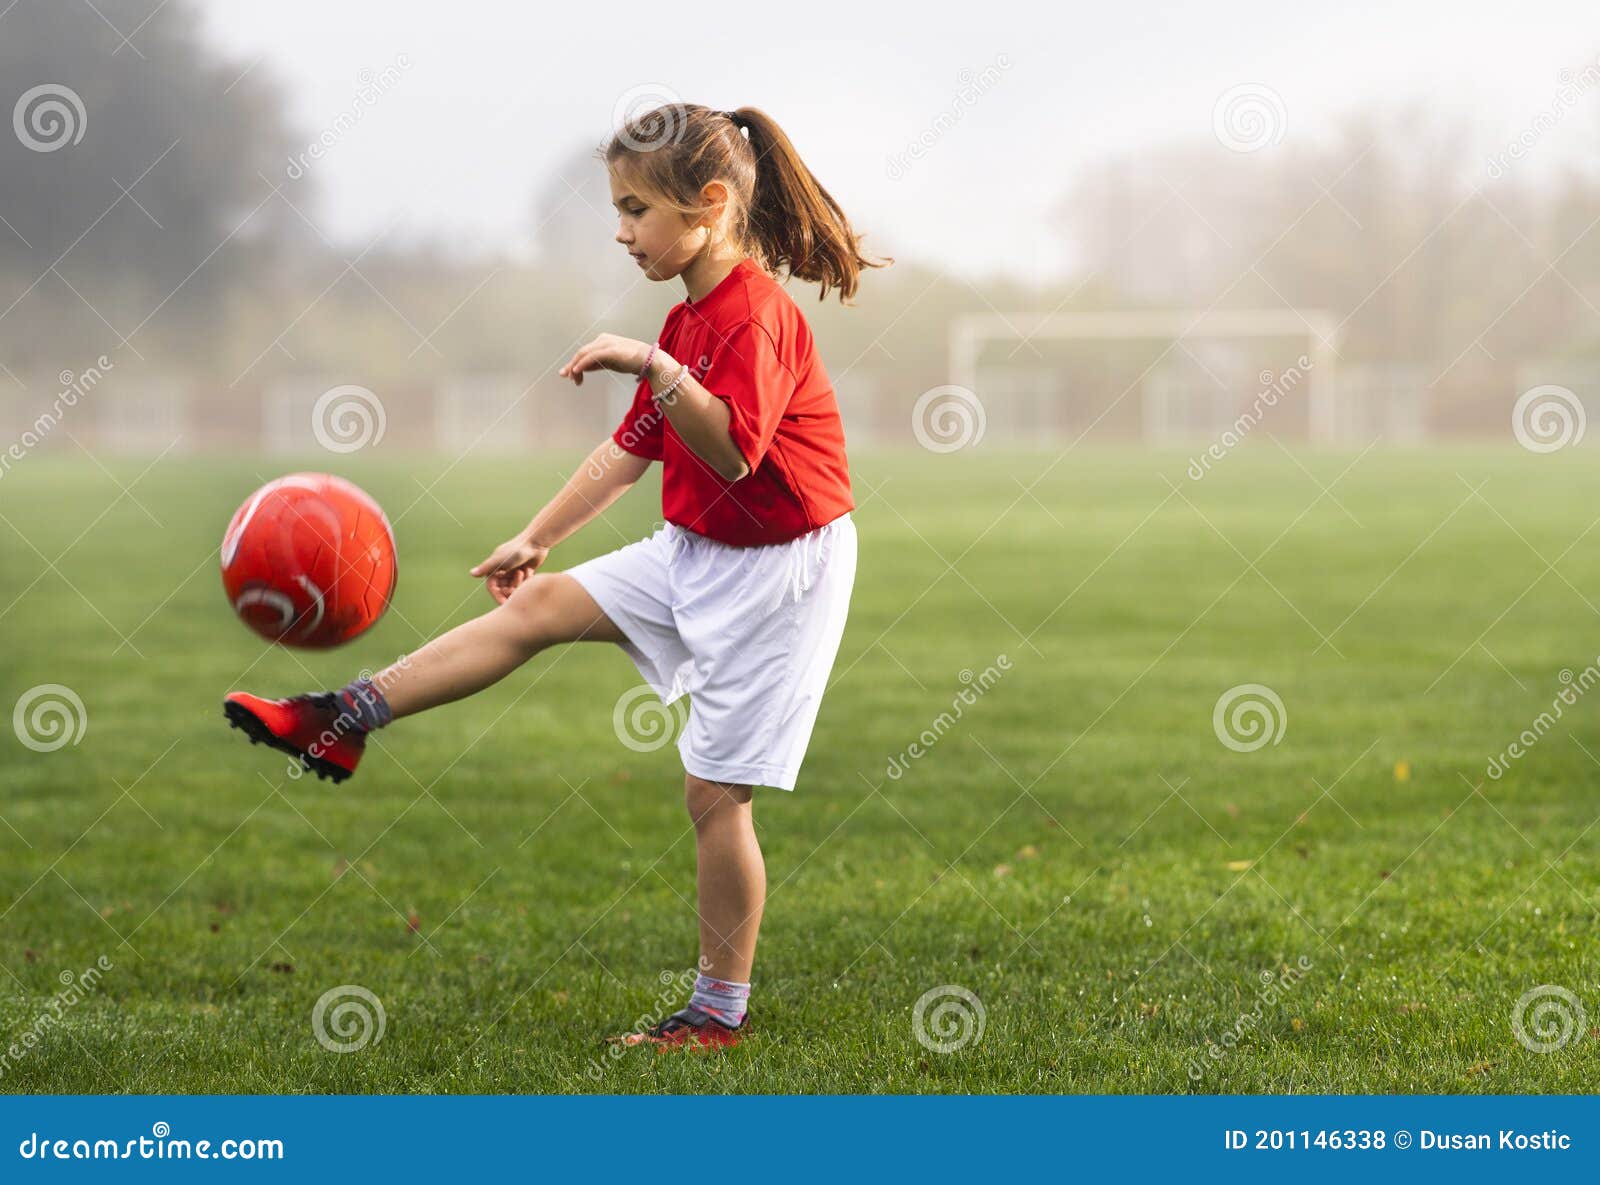 girl kicks girl in head soccer